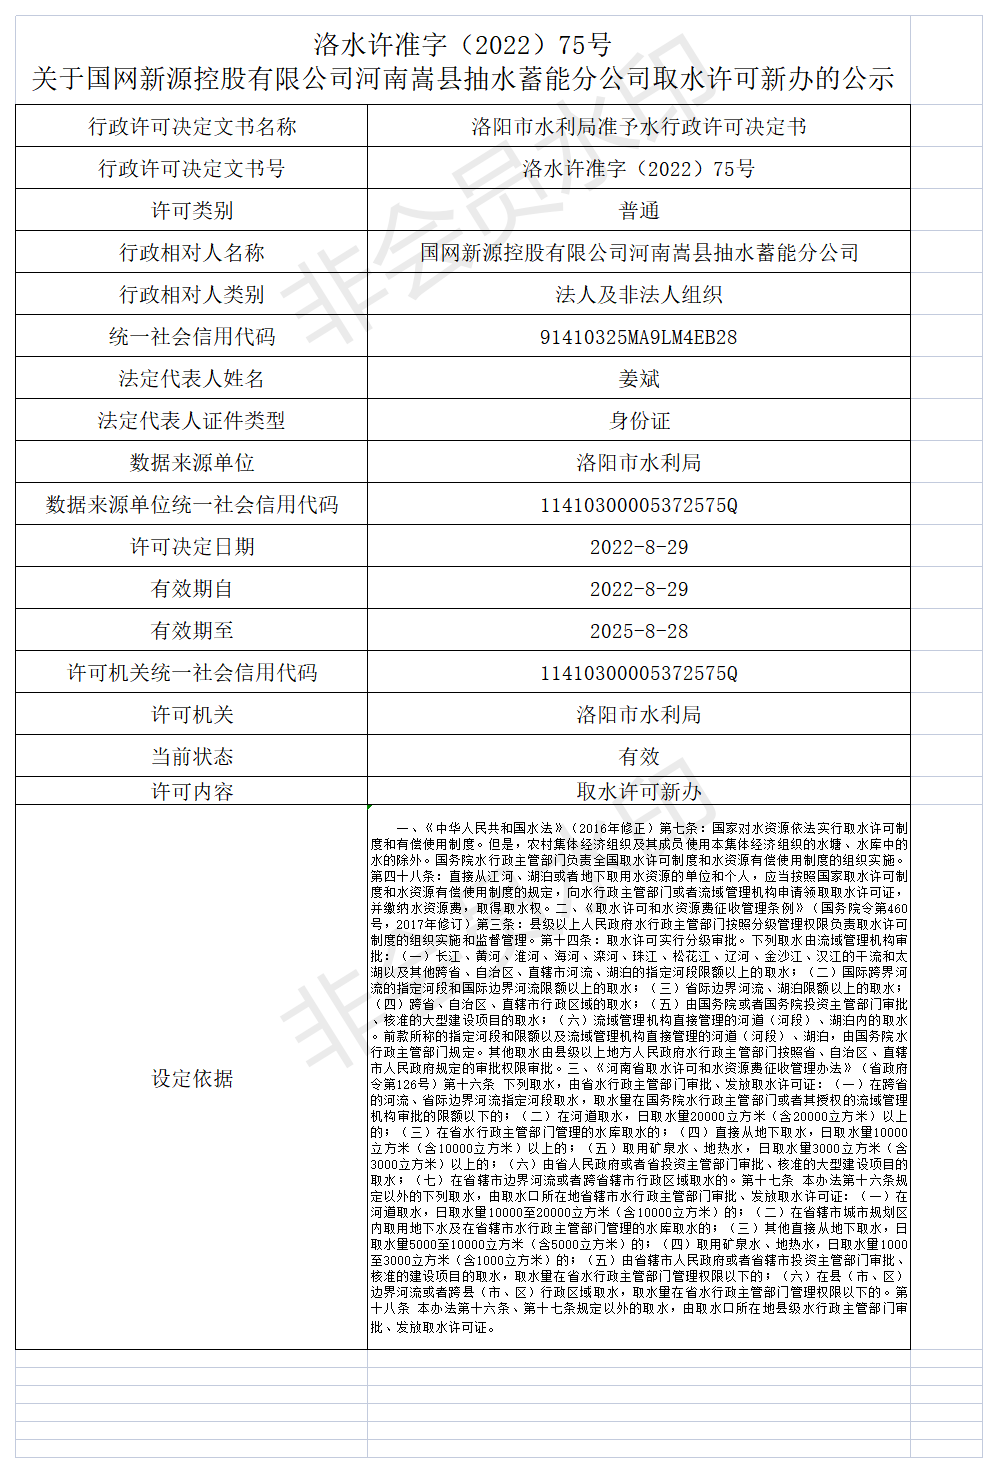 洛水许准字（2022）75号 关于国网新源控股有限公司河南嵩县抽水蓄能分公司取水许可新办的公示(图1)